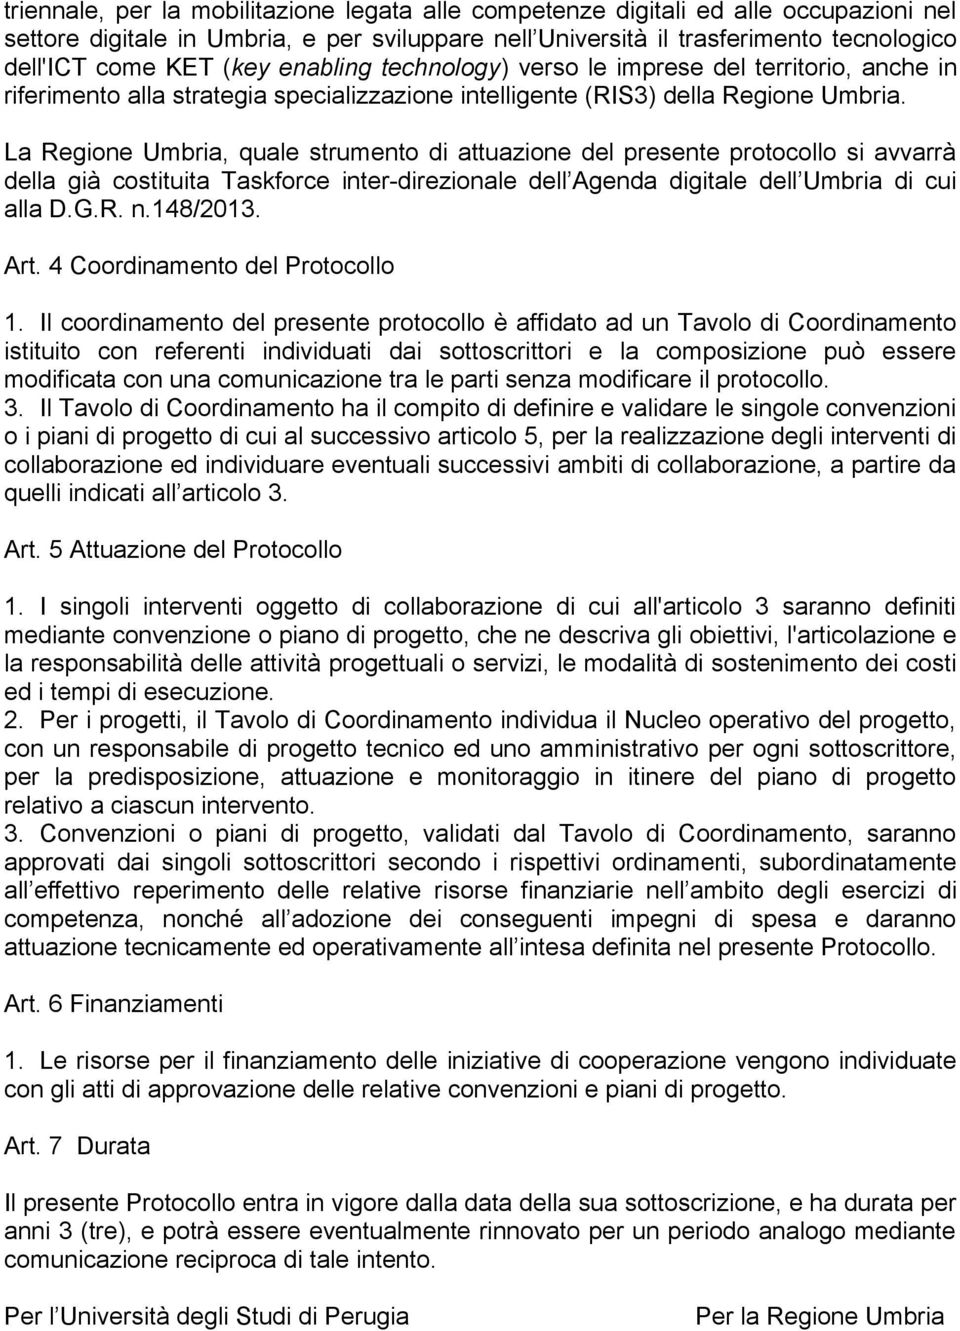 La Regione Umbria, quale strumento di attuazione del presente protocollo si avvarrà della già costituita Taskforce inter-direzionale dell Agenda digitale dell Umbria di cui alla D.G.R. n.148/2013.